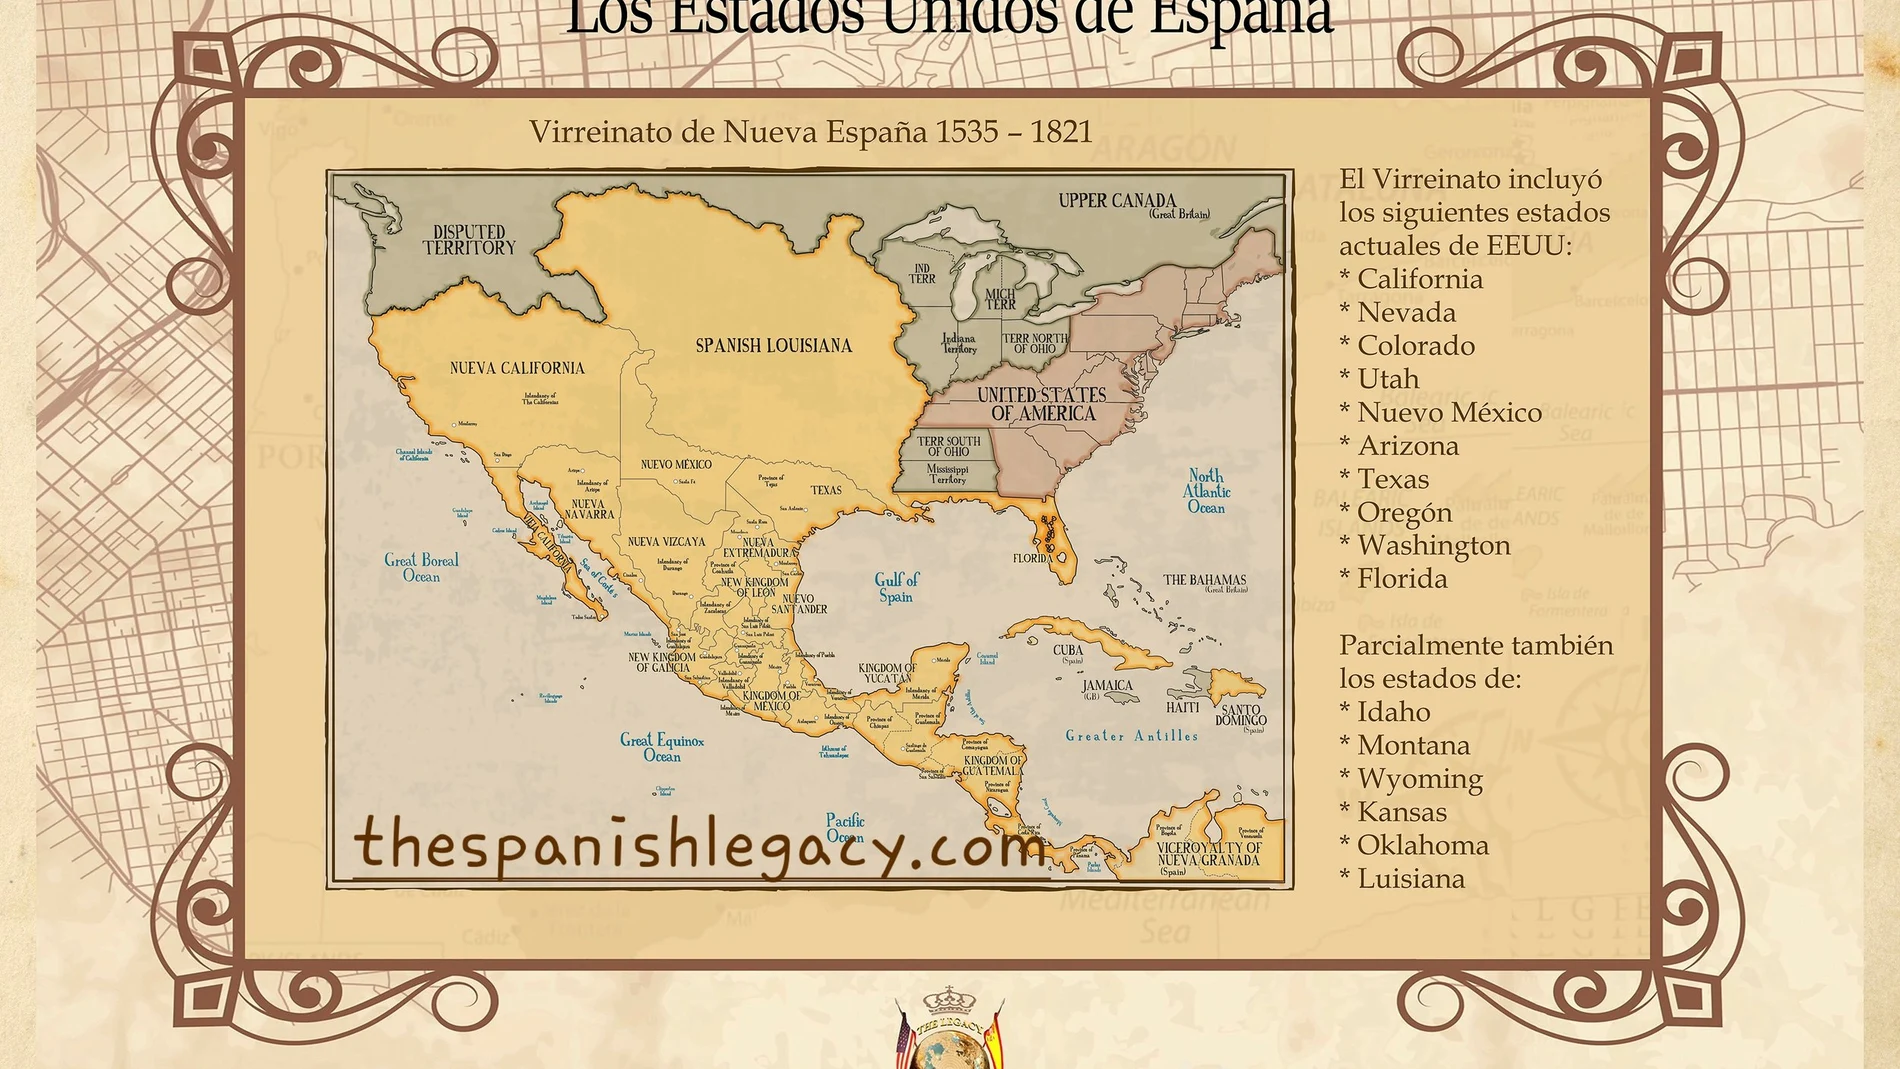 Mapa del territorio español en Norteamérica